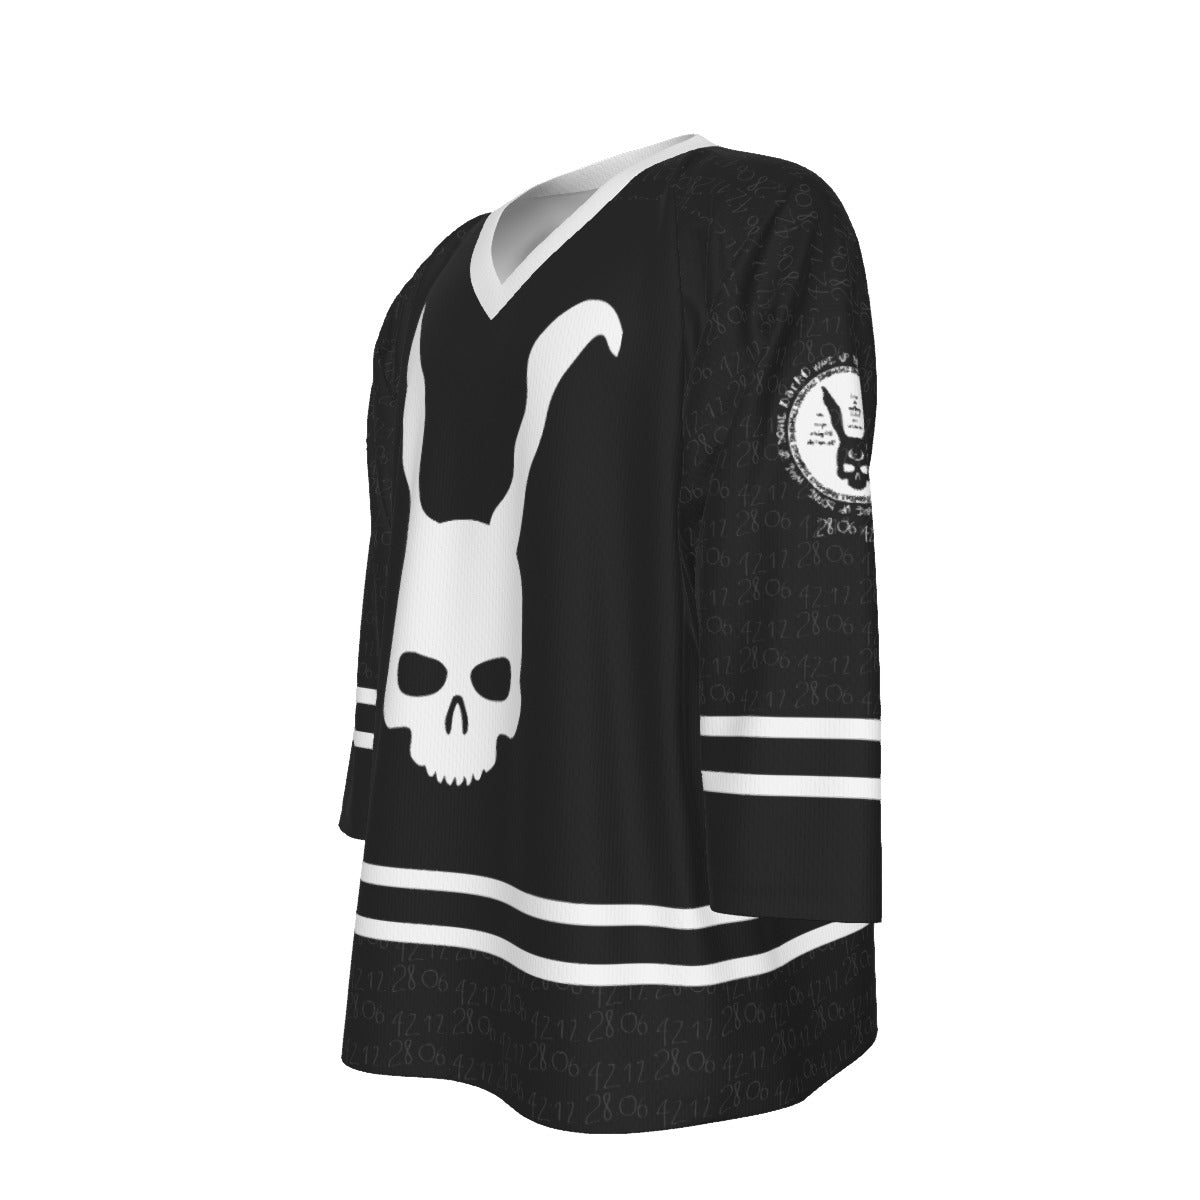 DarkO Unisex V-neck Hockey Jersey